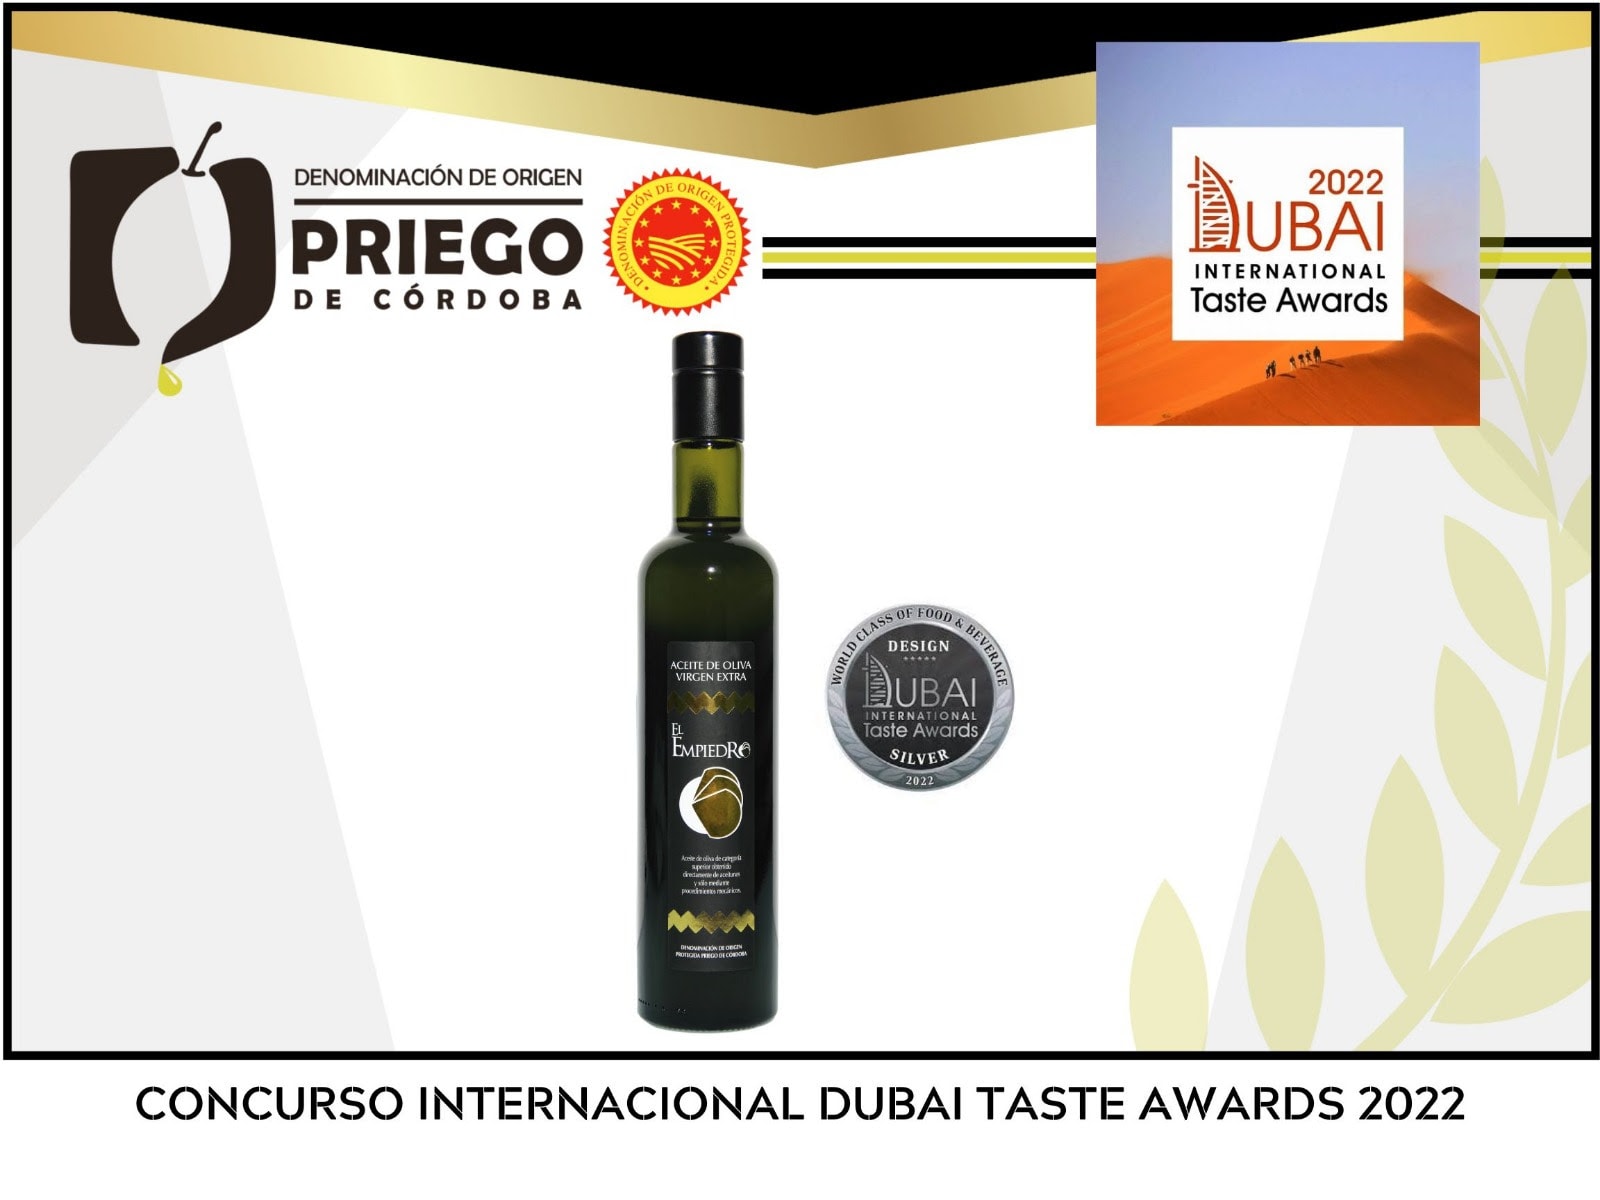 Dubai Taste Awards 2022 DOP Priego de Córdoba